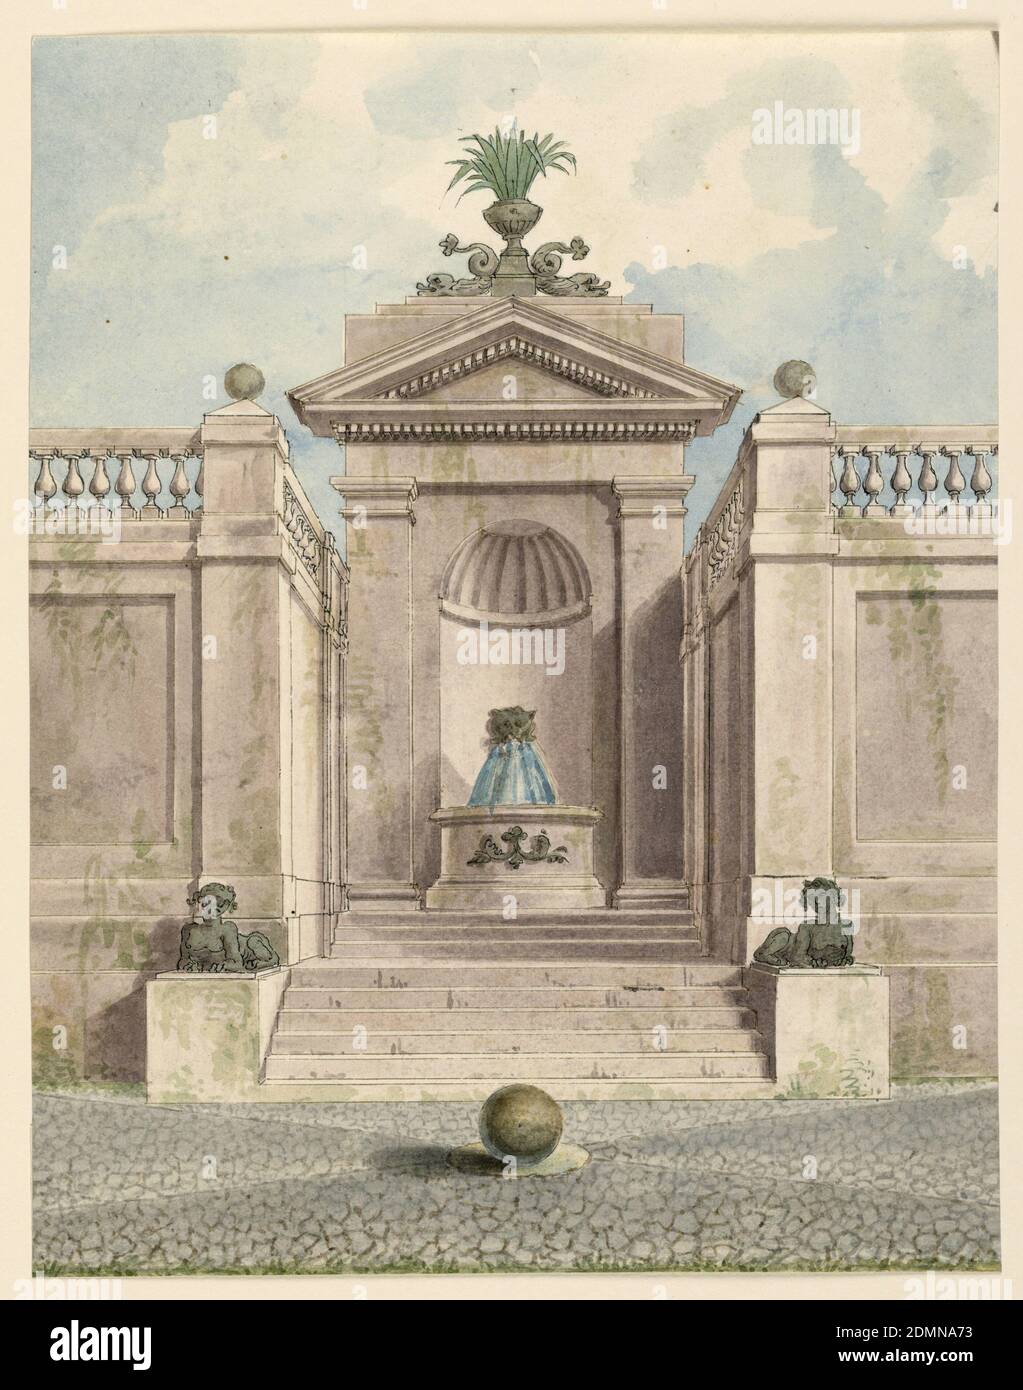 Fontaine dans une niche, stylo et encre brune, aquarelle support: Papier vélin blanc, Rome, Italie, Italie, 1800–1820, architecture, dessin Banque D'Images